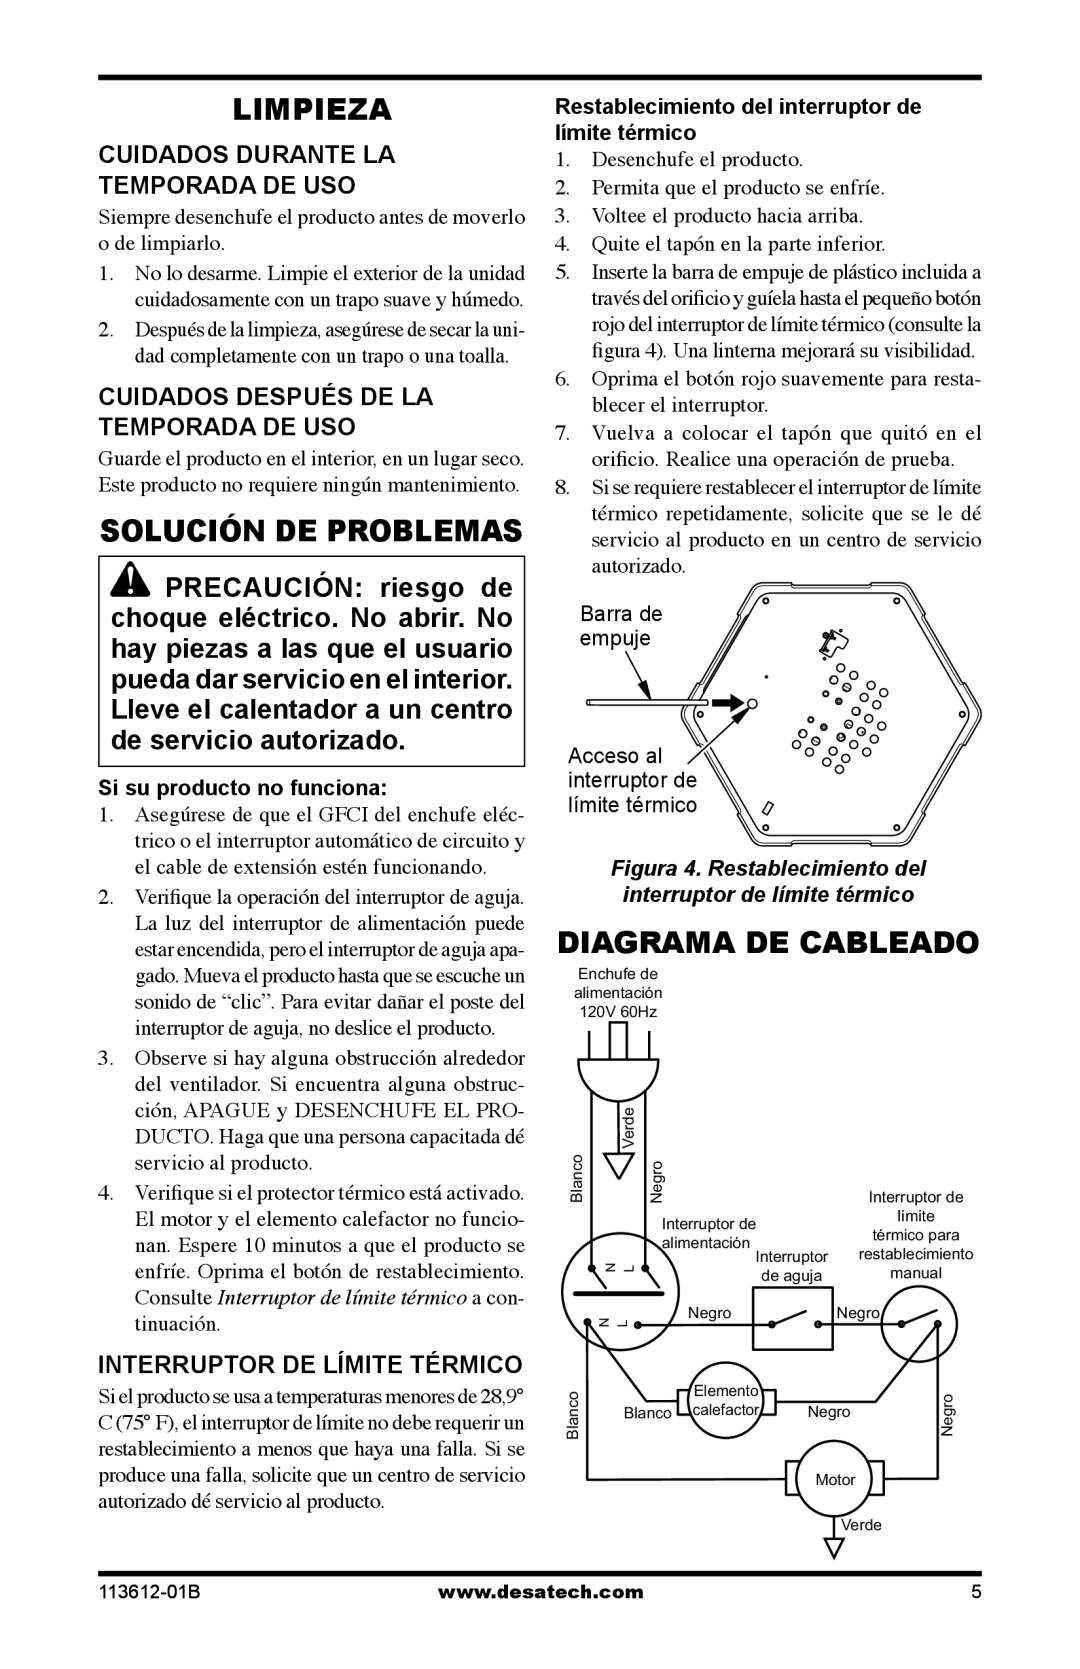 Desa PD15EA owner manual Limpieza, Diagrama De Cableado, Solución De Problemas, Cuidados Durante La Temporada De Uso 